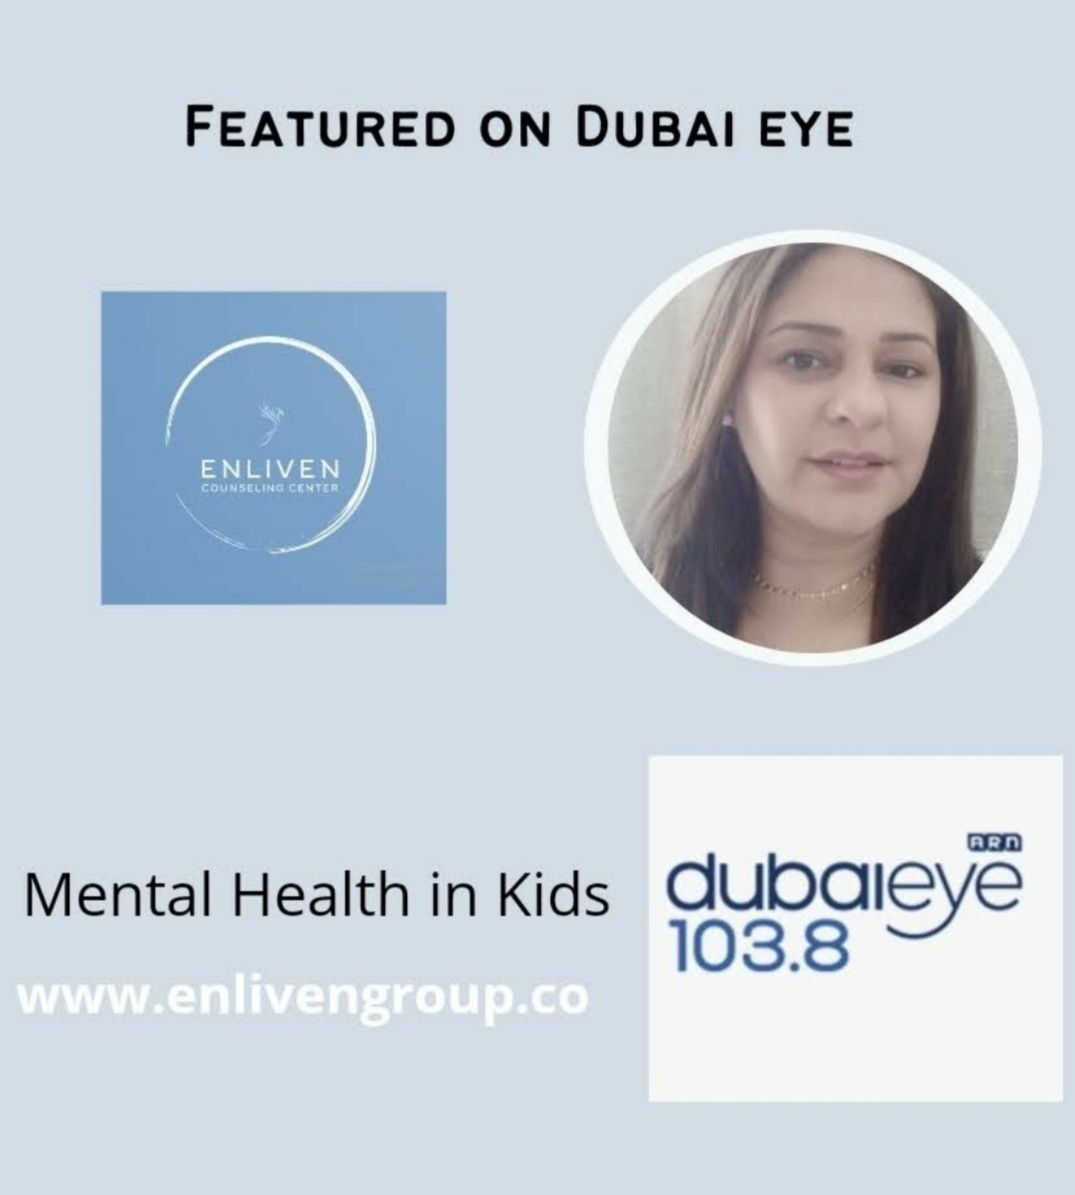 FEATURED ON DUBAI EYE

pj

ENLIVEN

 

Mental Health in Kids dubaieye
103.8